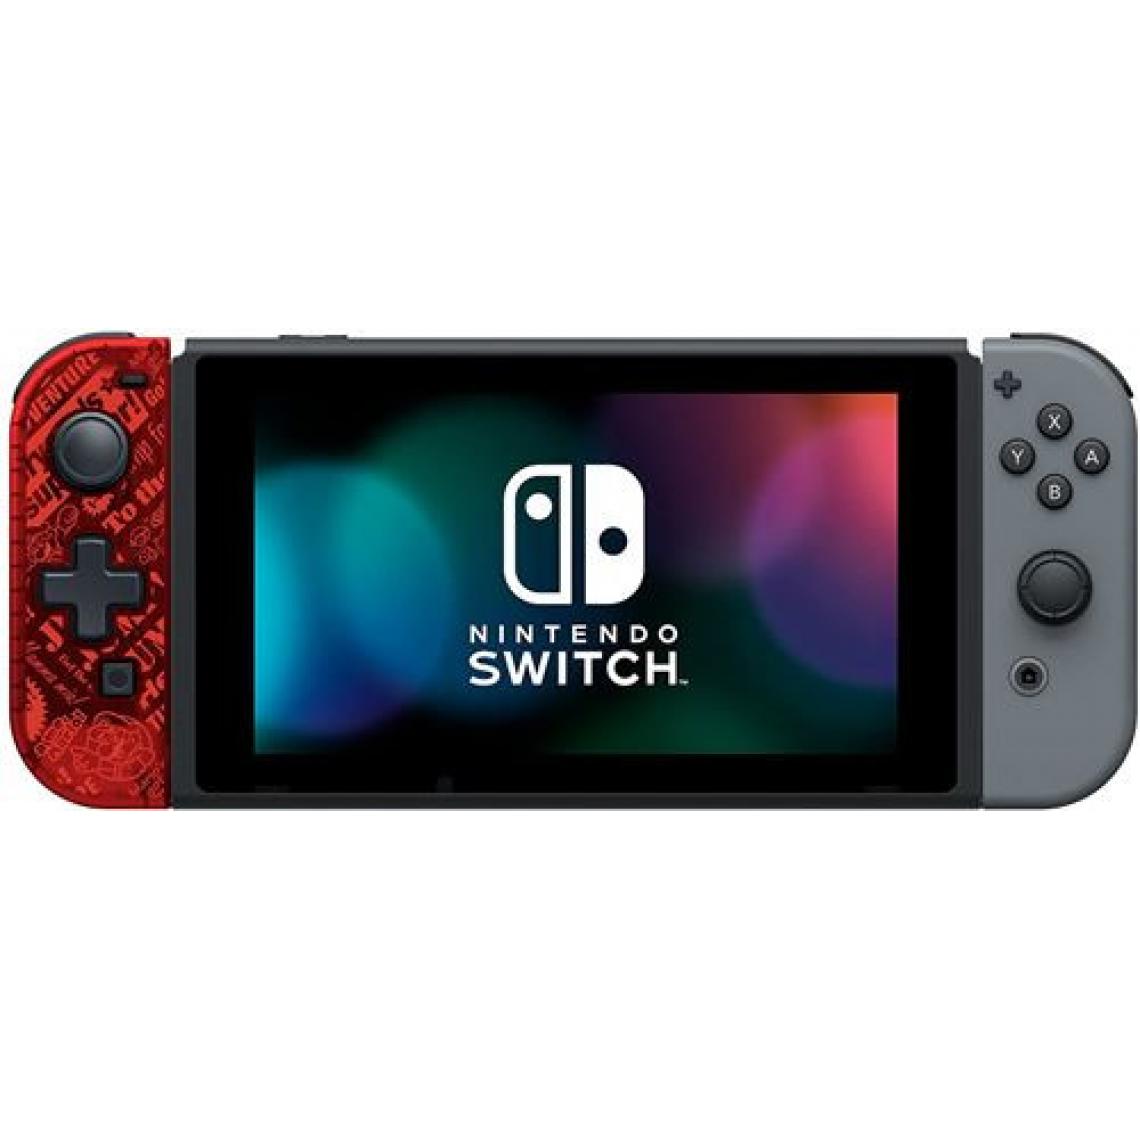 Hori - Manette D Pad Hori pour Nintendo Switch Edition Mario V2 - Joystick